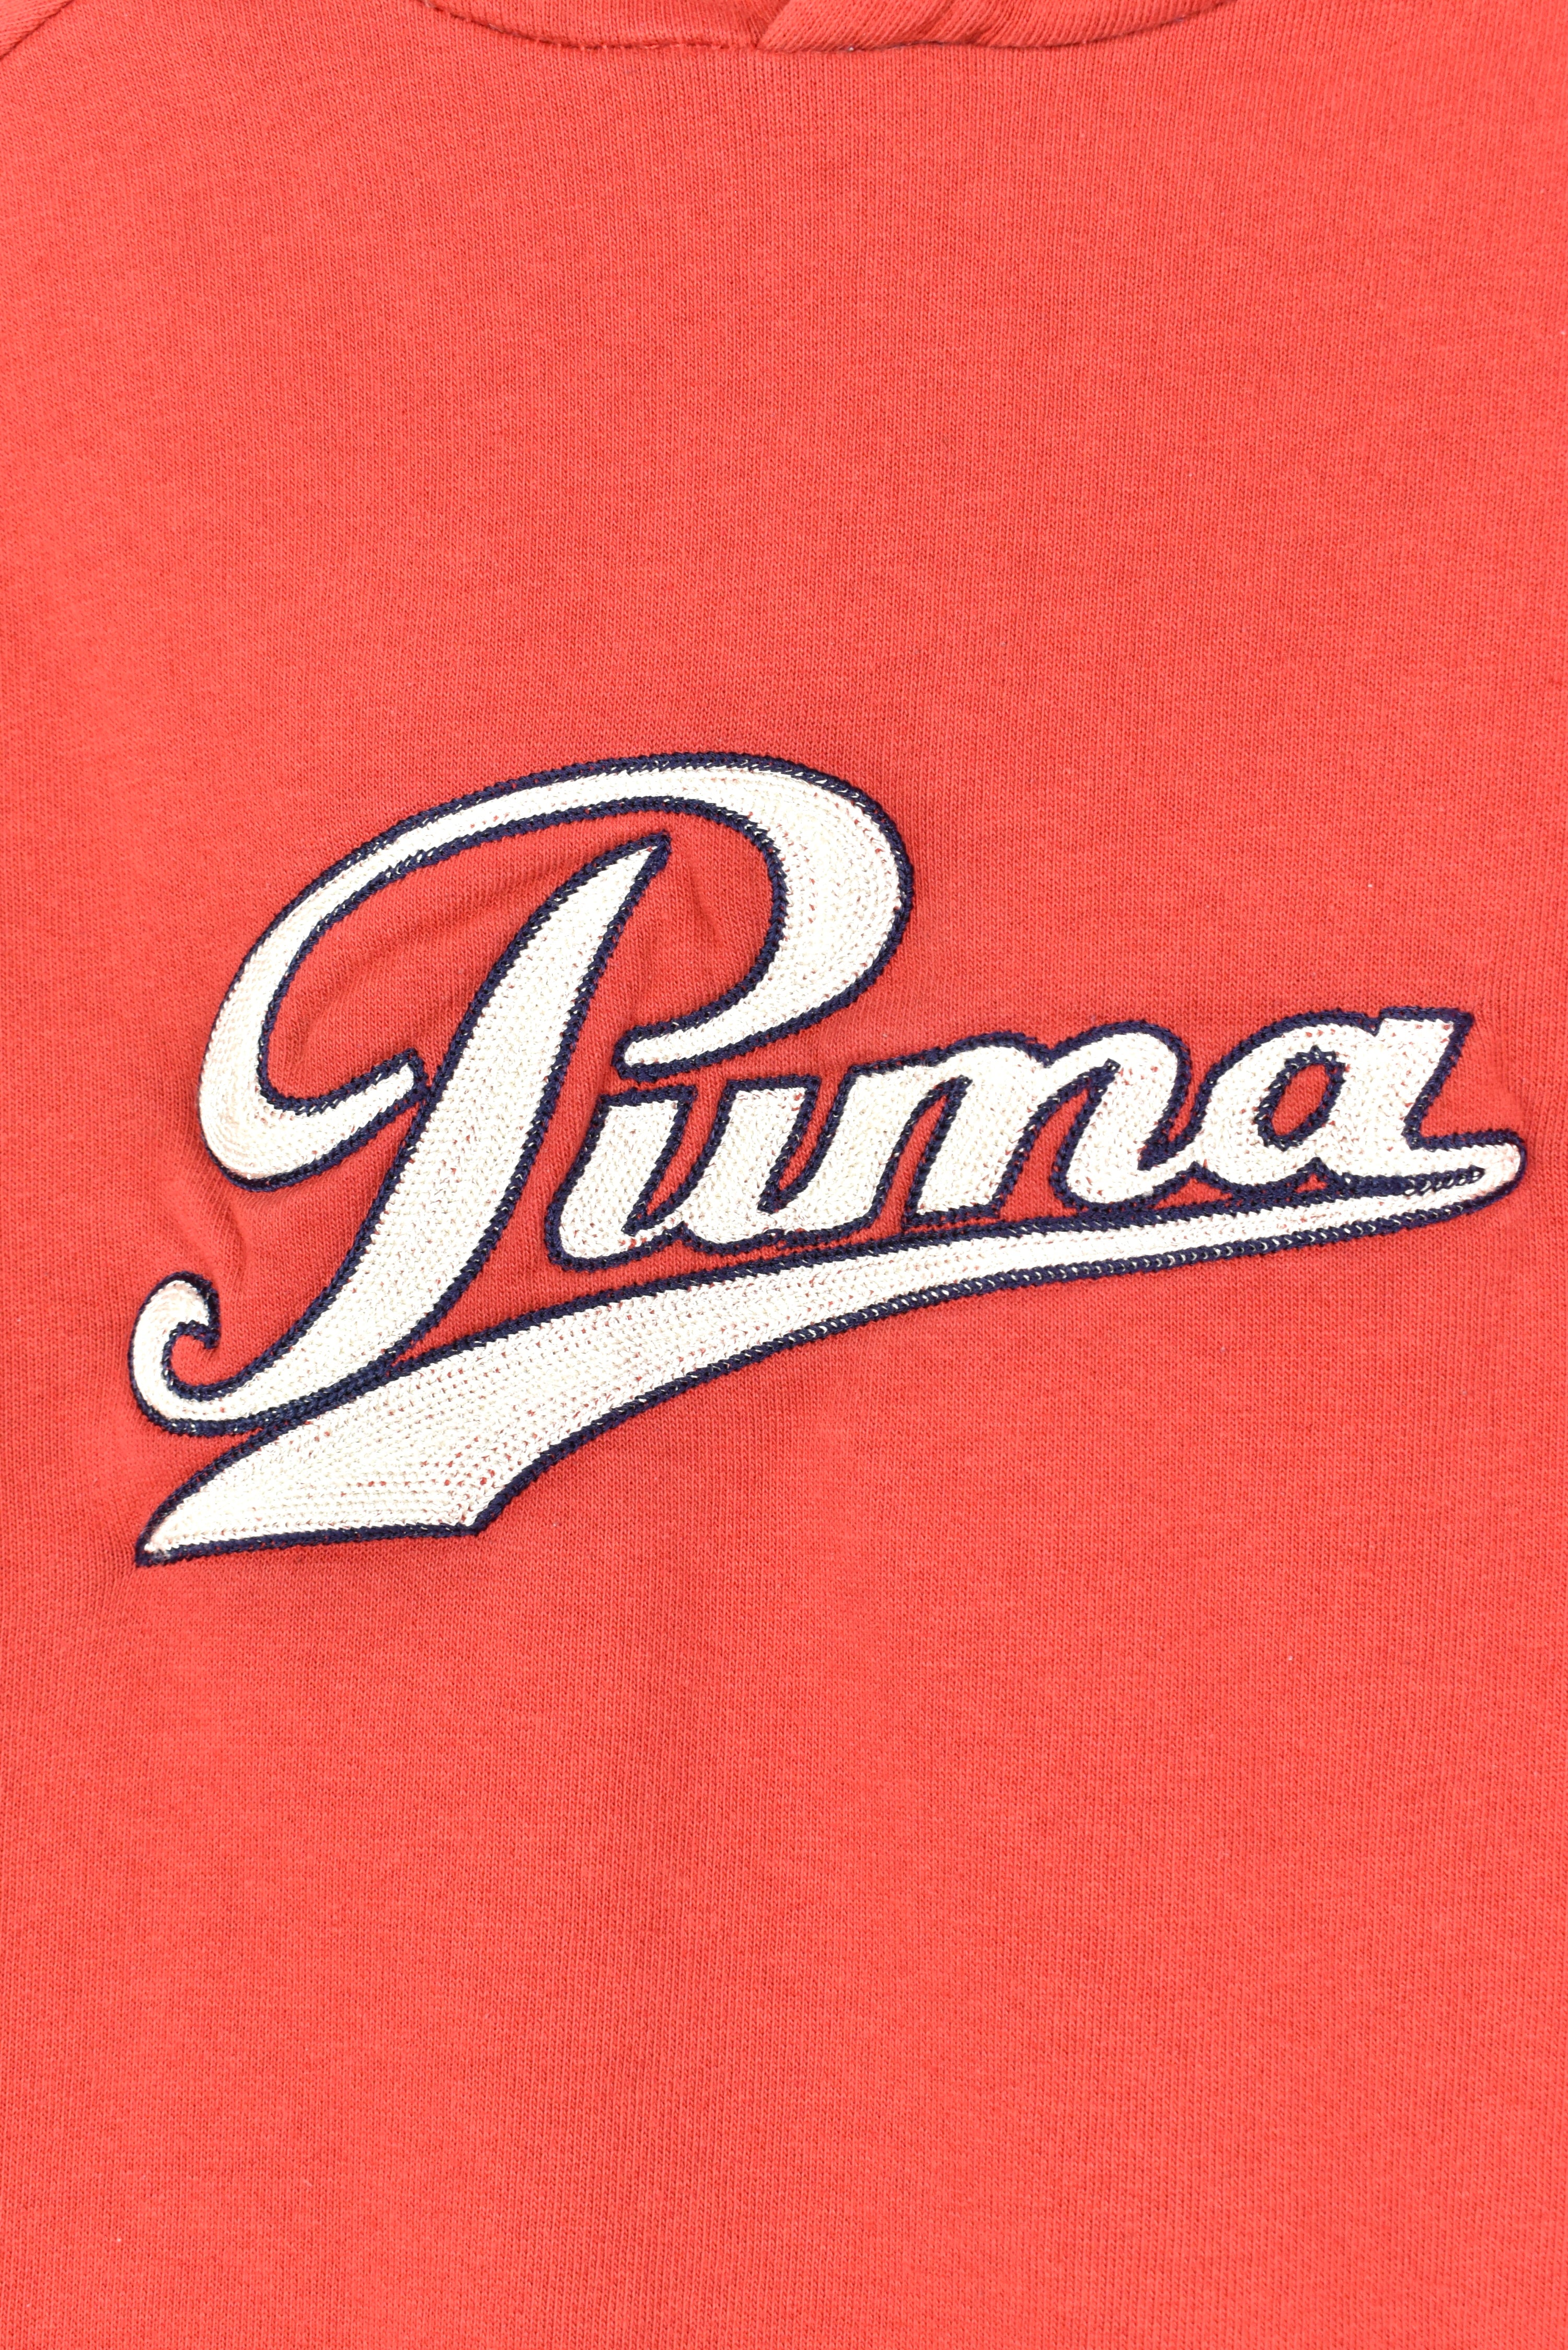 PUMA SUDADERA VINTAGE SWEATSHIRT - Alphaville Vintage